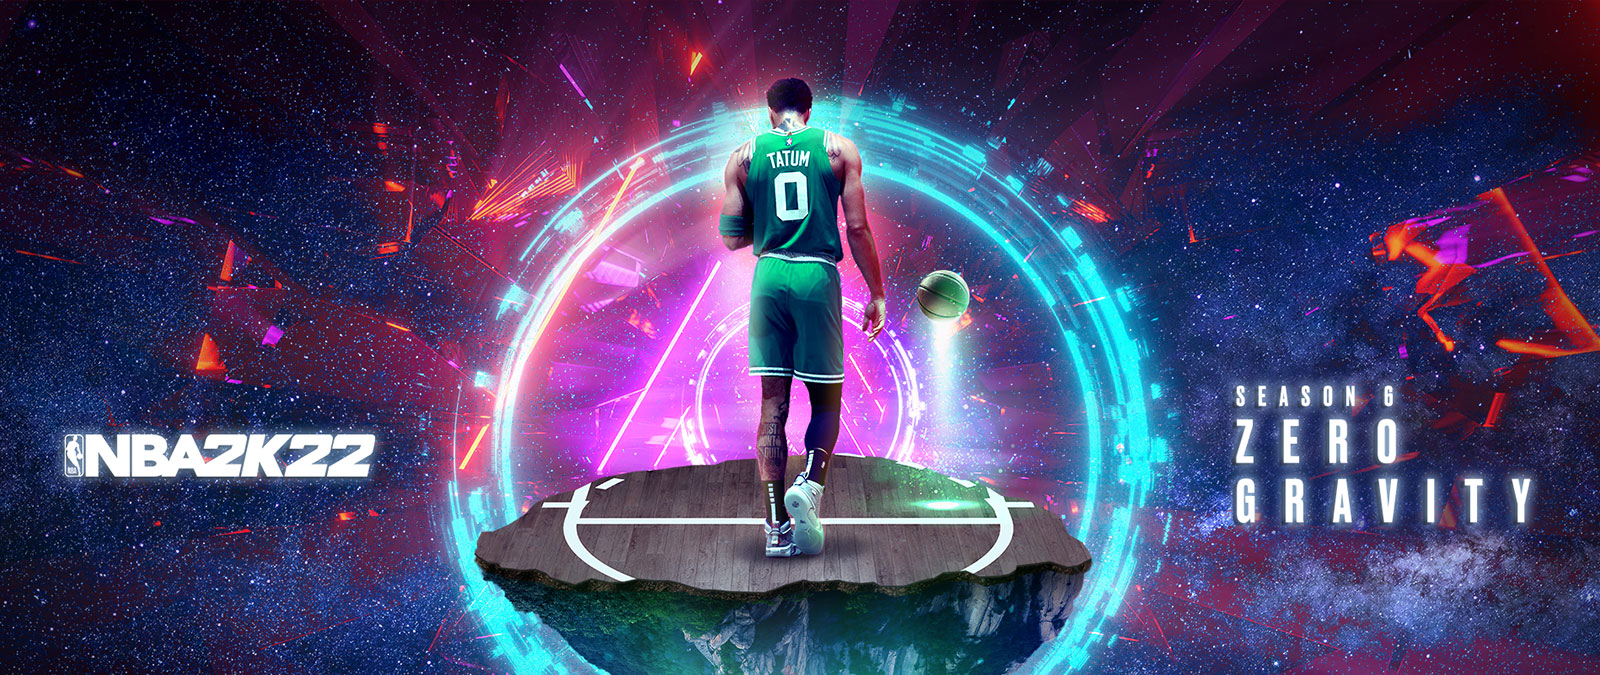 NBA 2K22, Temporada 6 Gravedad Cero, Tatum está de pie sobre una pieza flotante de una cancha de baloncesto en el espacio con anillos de energía que lo rodean.